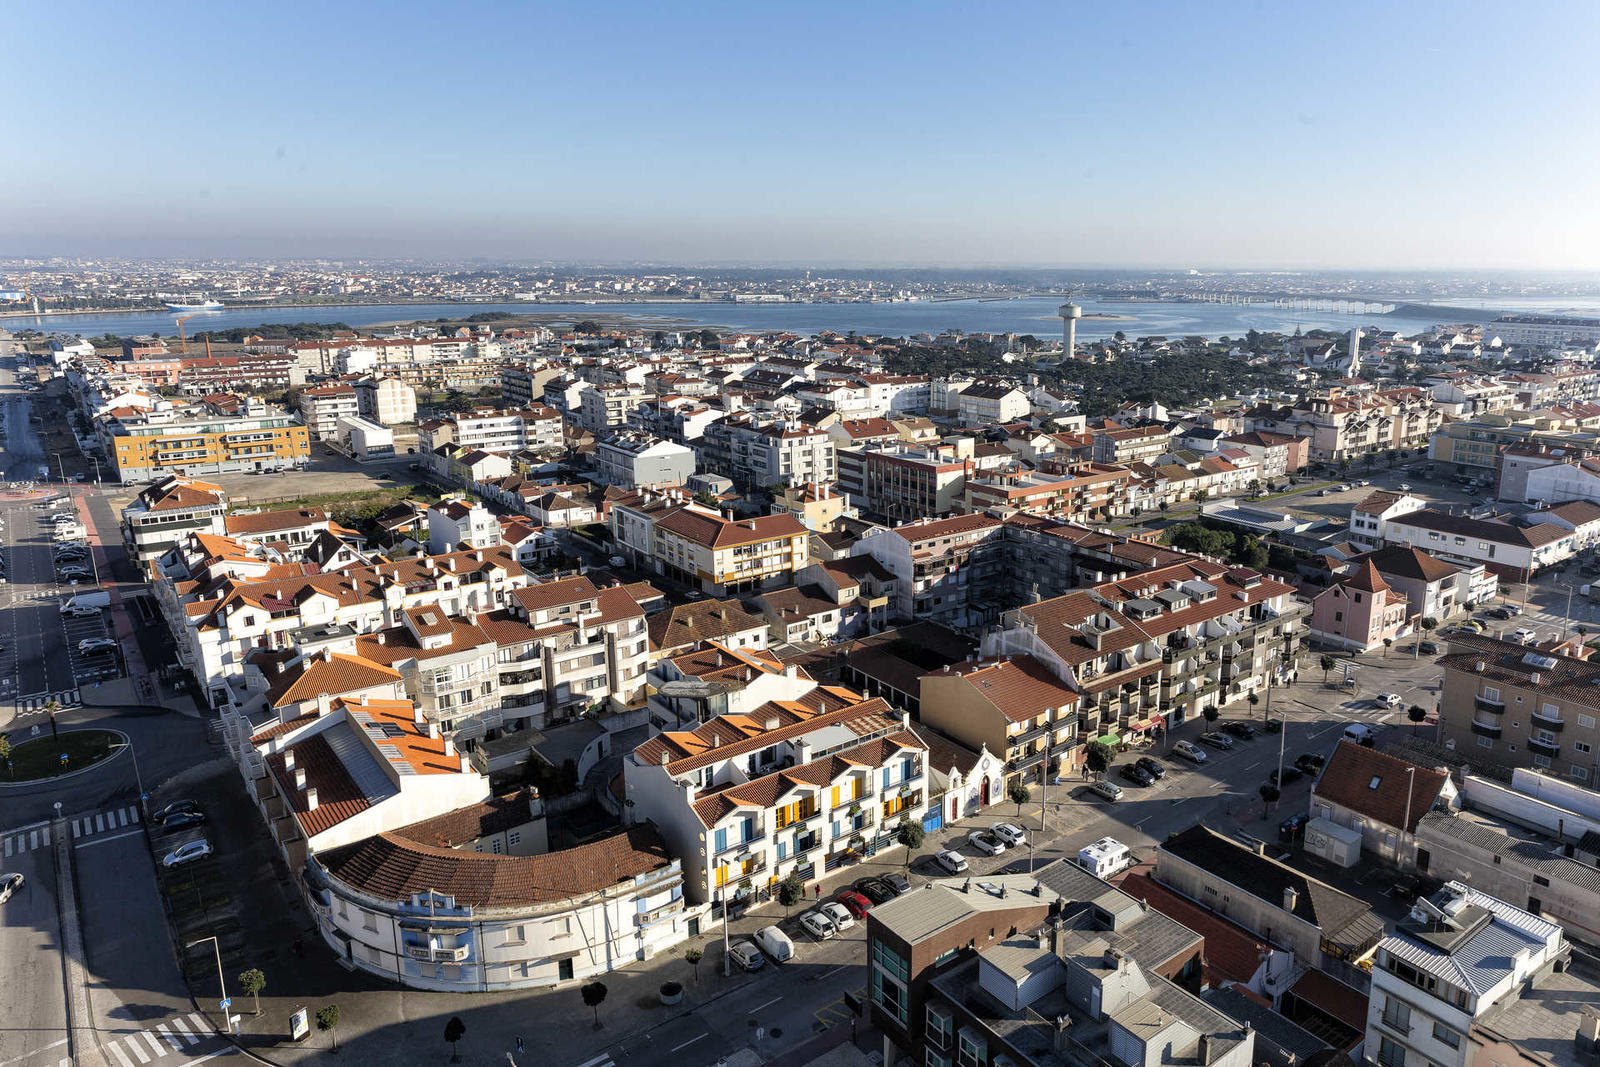 Reportagem no farol de Aveiro, o farol que teve mais visitas em Portugal em 2018.